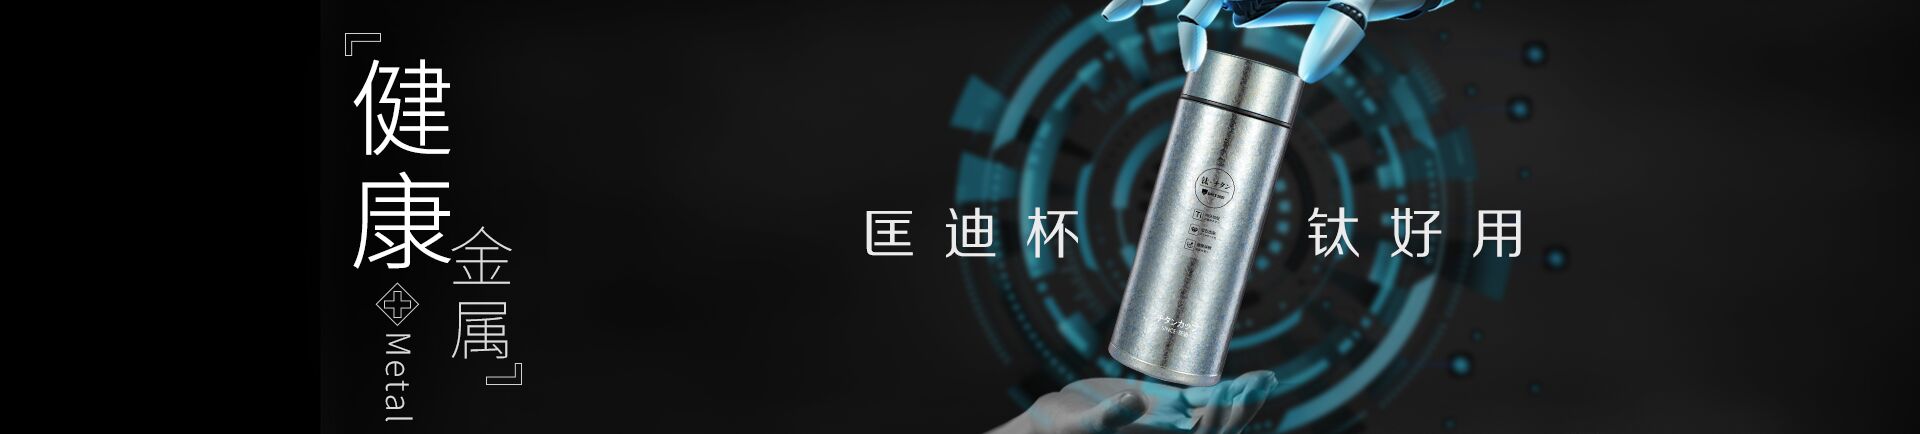 浙江匡迪工貿有限公司-Zhejiang kuangdi,kuangdi industry and trade - zhejiang kuangdi industry and trade - focus on the thermos cup, thermos kettle, glass research and manufacture of large-scale enterprises